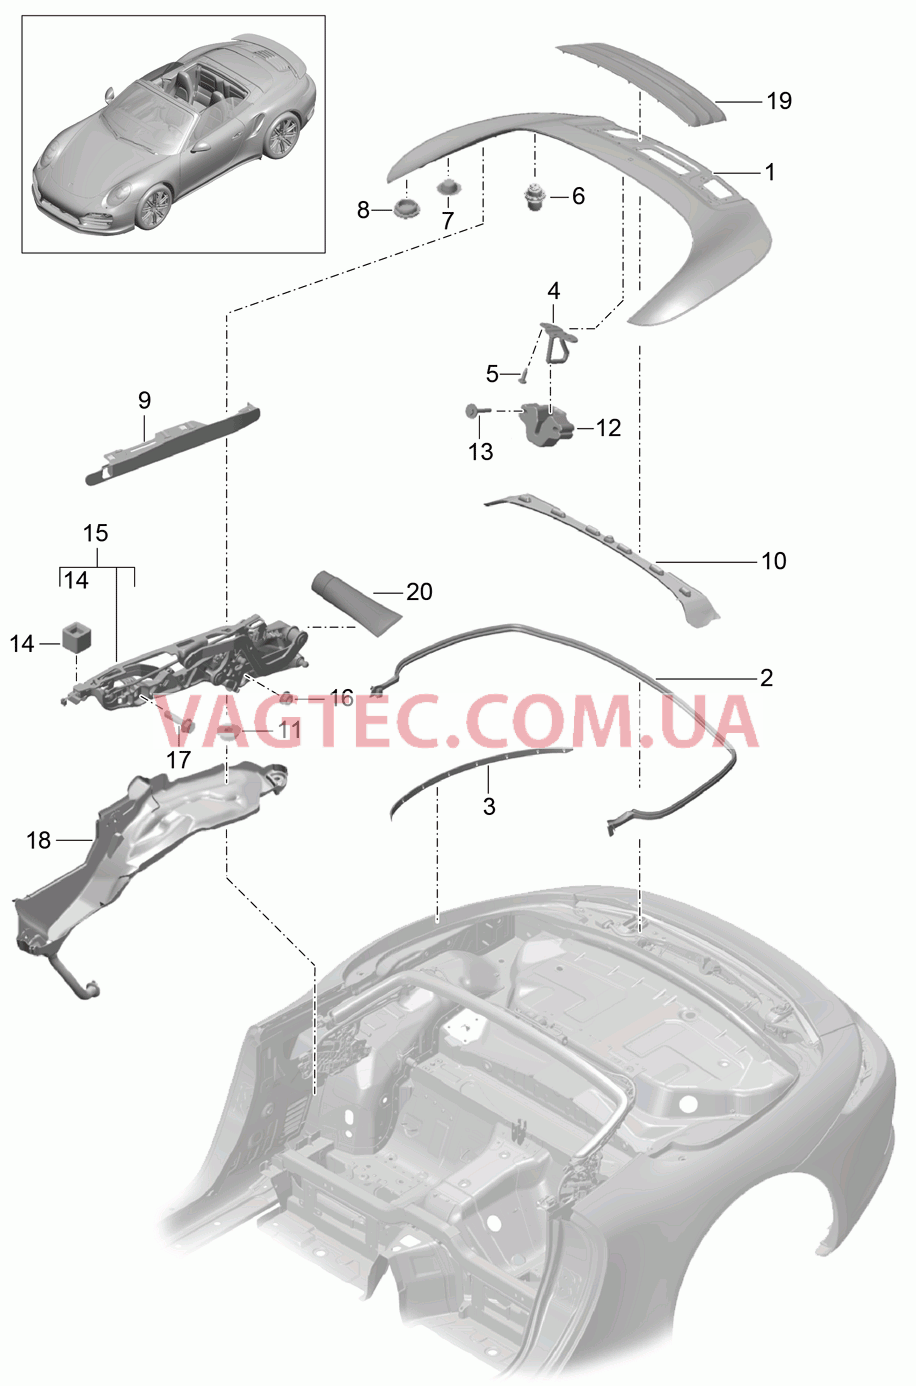 811-060 Отсек складного верха, Крышка
						
						CABRIO для PORSCHE Porsche991Turbo 2014-2017USA